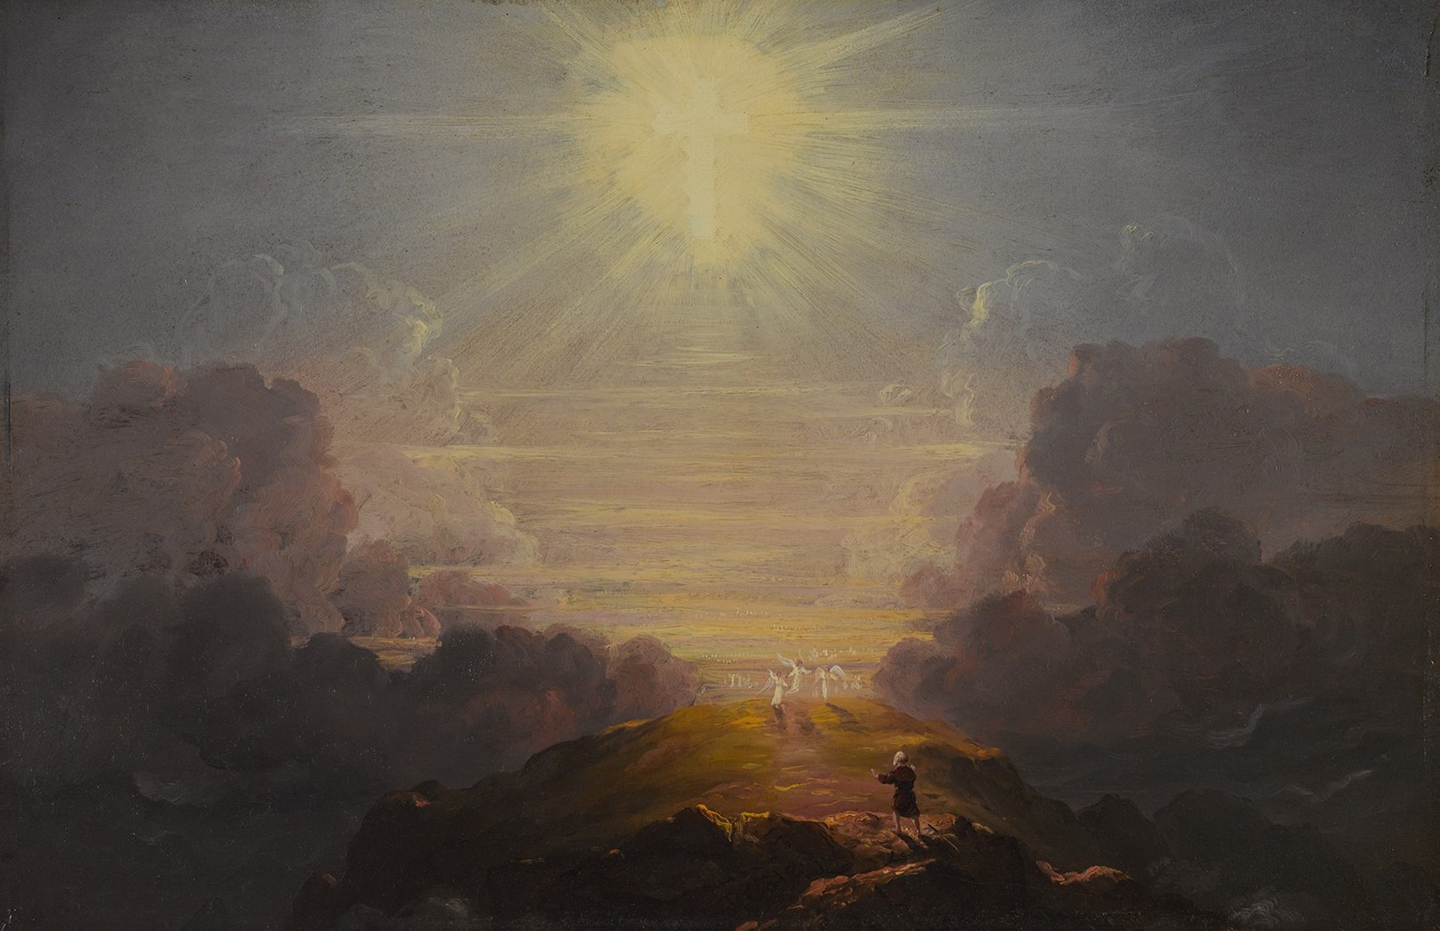 Tìm kiếm trí tuệ là cả một hành trình. Một bức nghiên cứu cho loạt tranh “The Cross and the World” (Thập tự giá và thế giới), họa sỹ Thomas Cole, khoảng năm 1846–1847. Tranh sơn dầu trên gỗ. Bảo tàng Brooklyn. (Ảnh: Tư liệu công cộng)